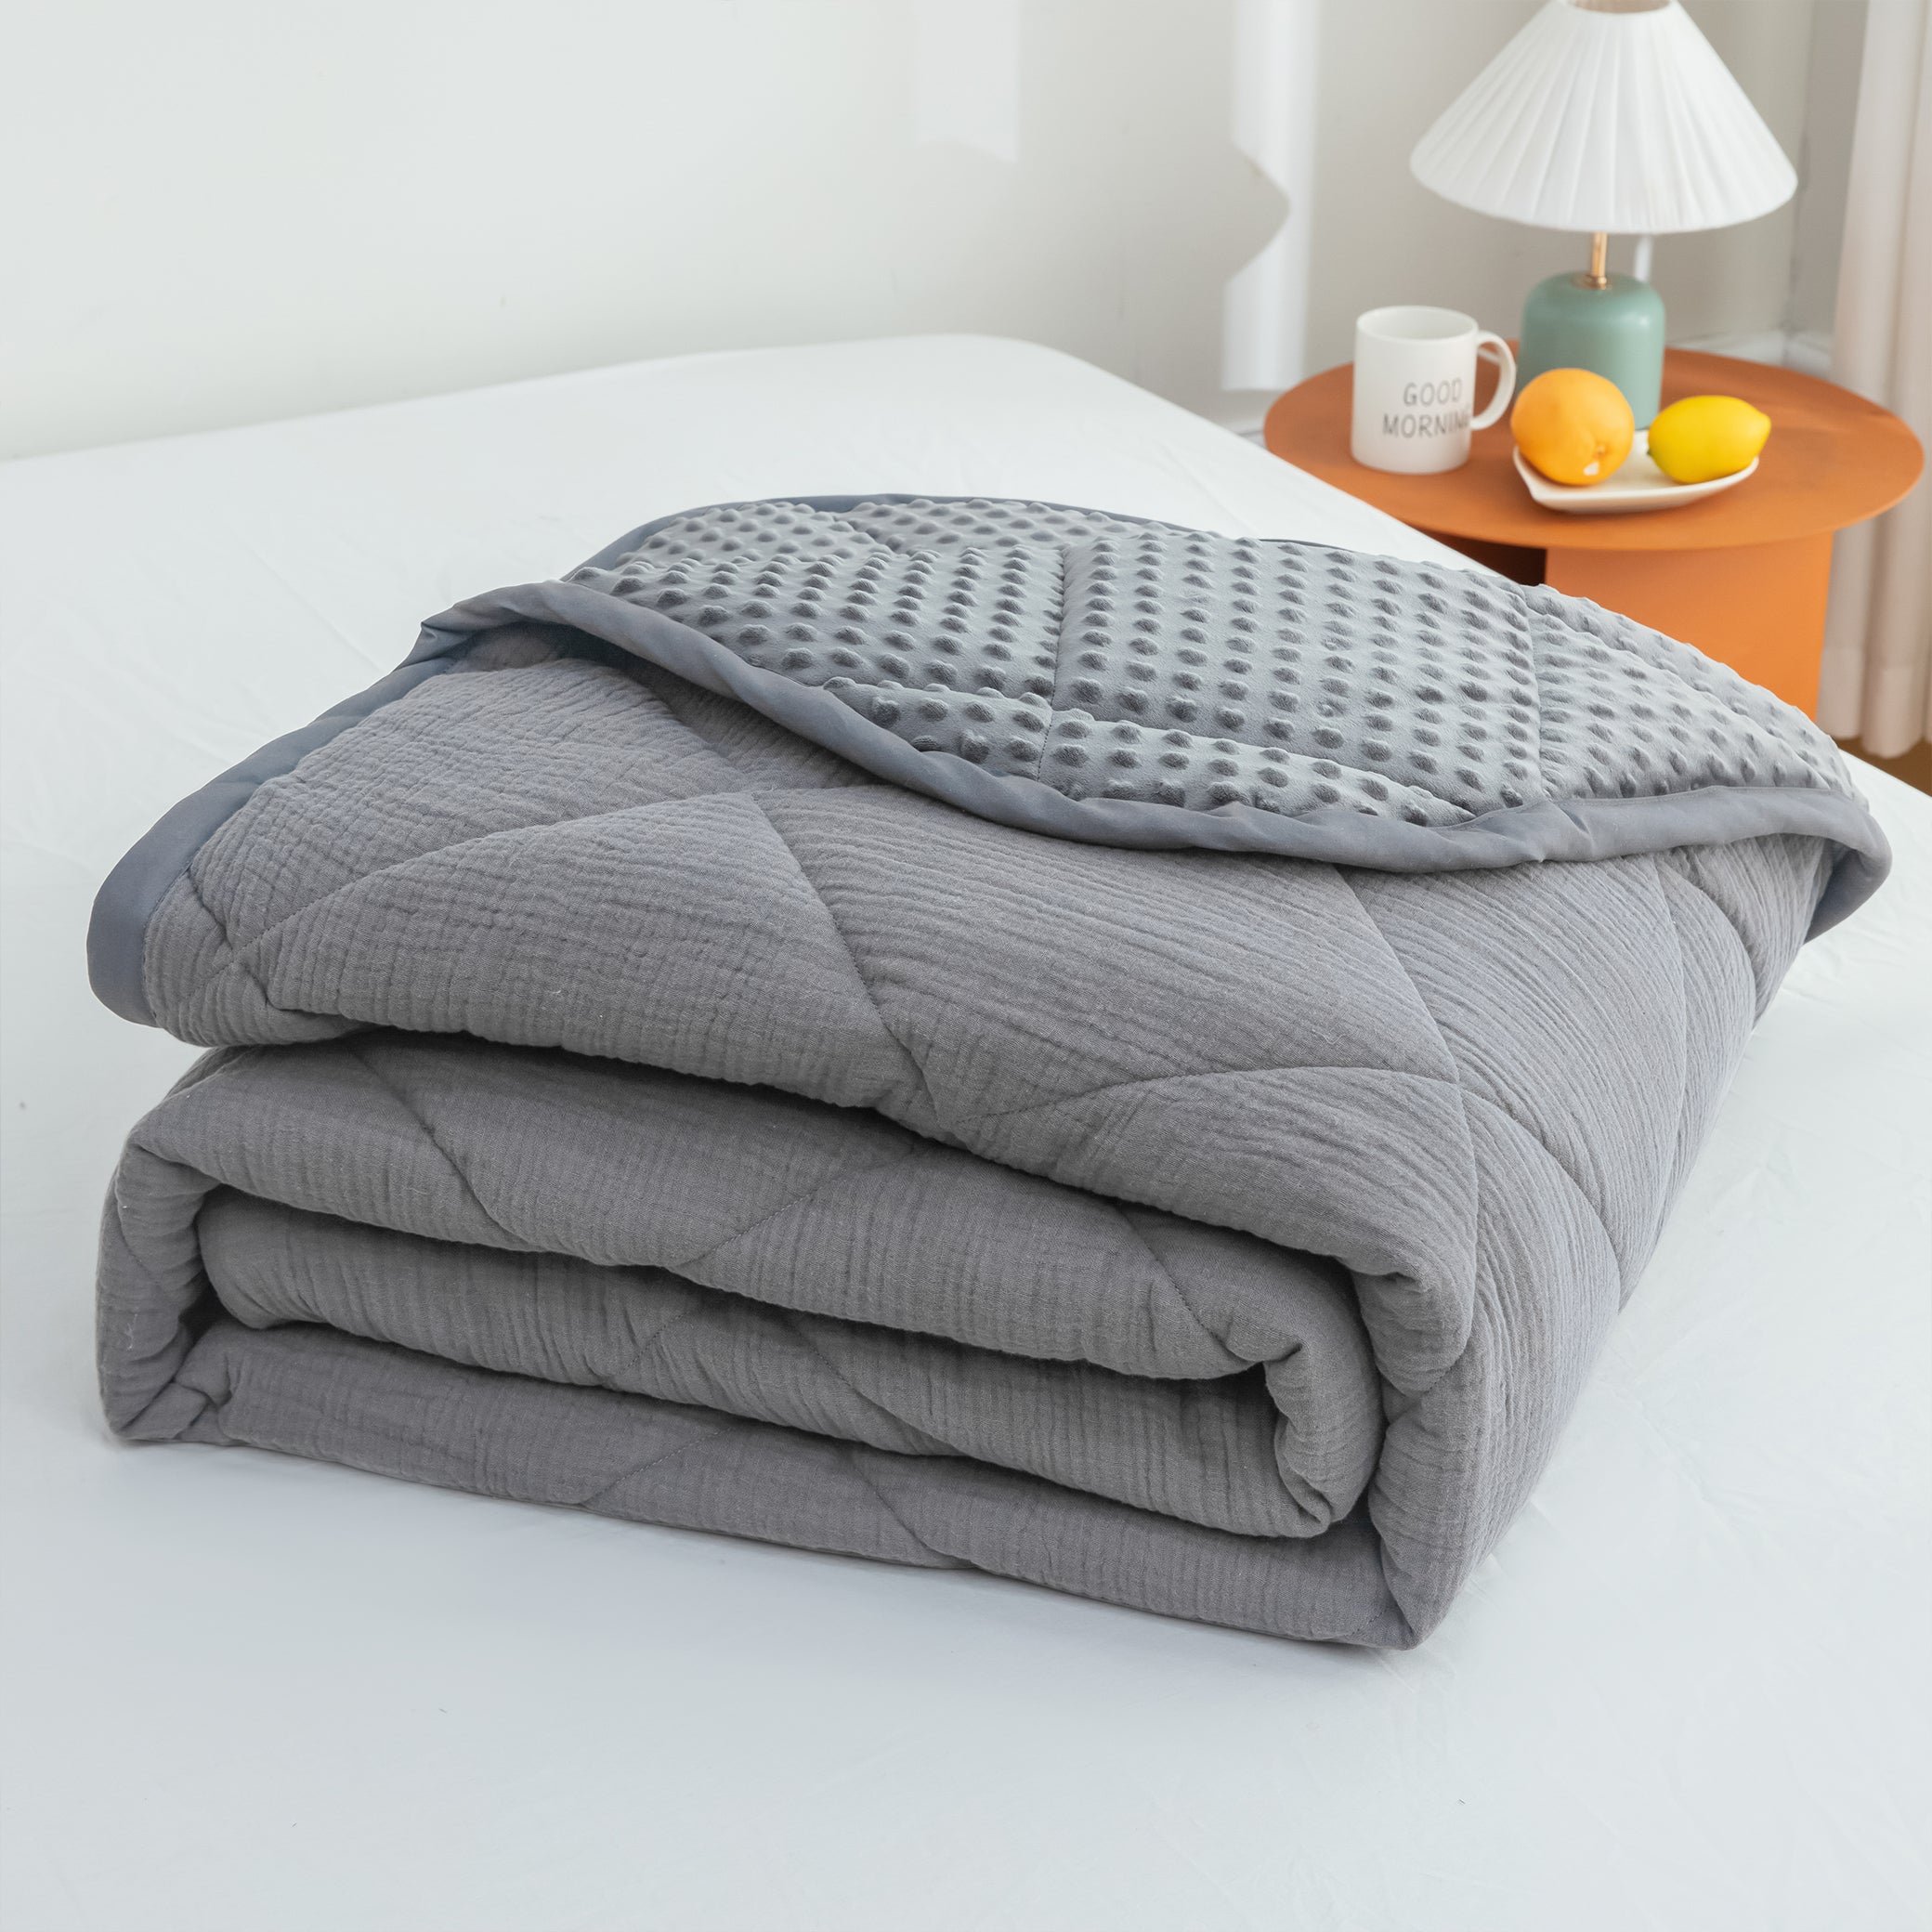 LUXE Grey Comforter